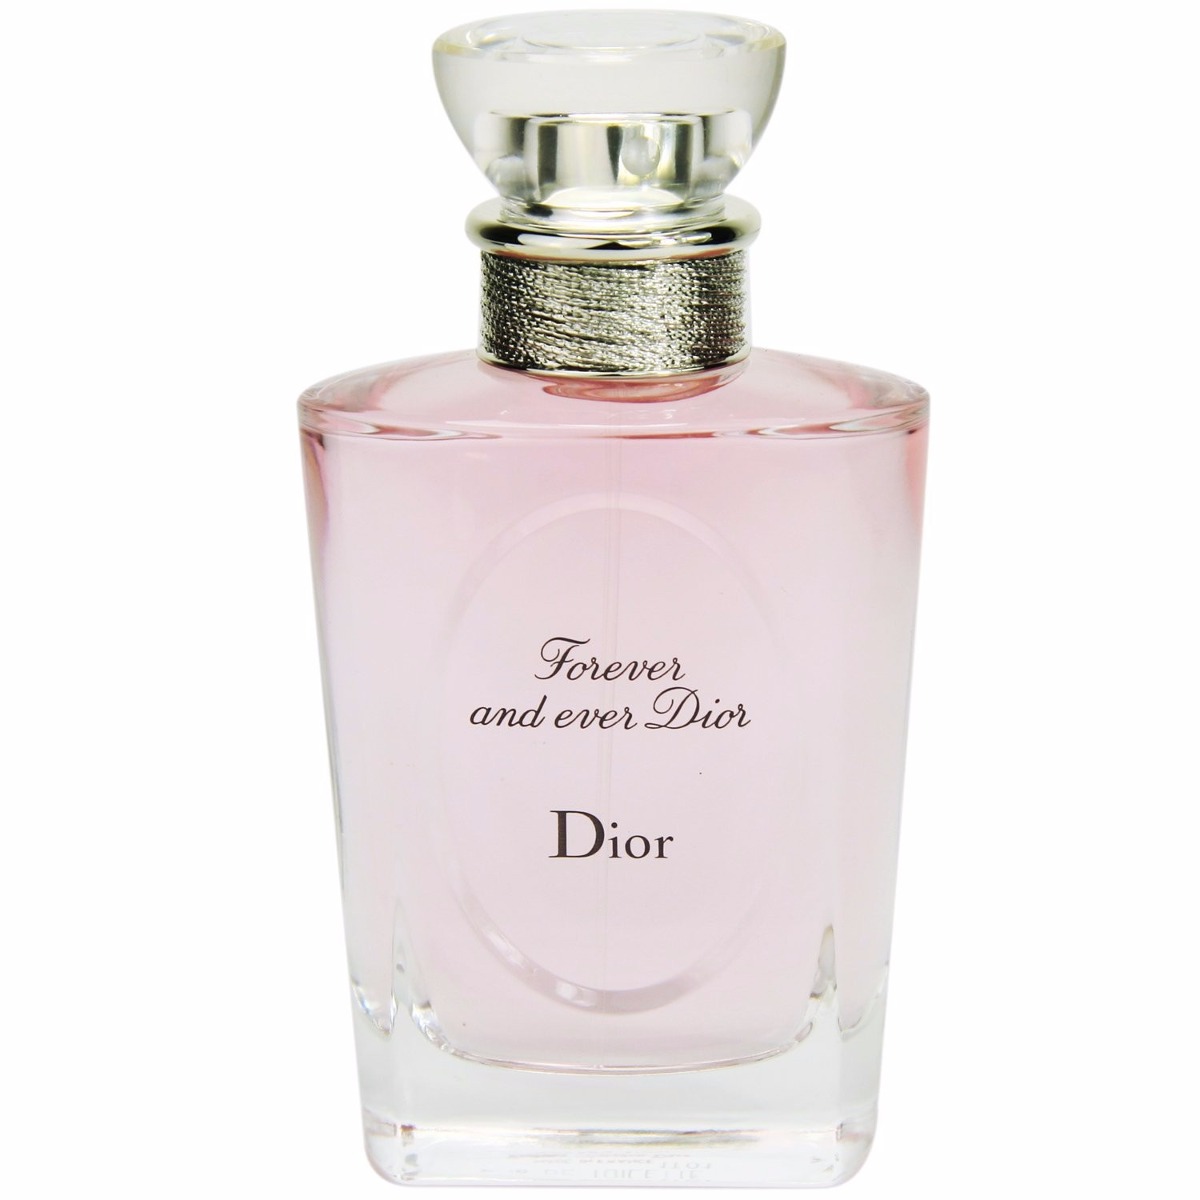 Perfume Importado Dior Forever And Ever 100ml Frete Gráts - R$ 379,90